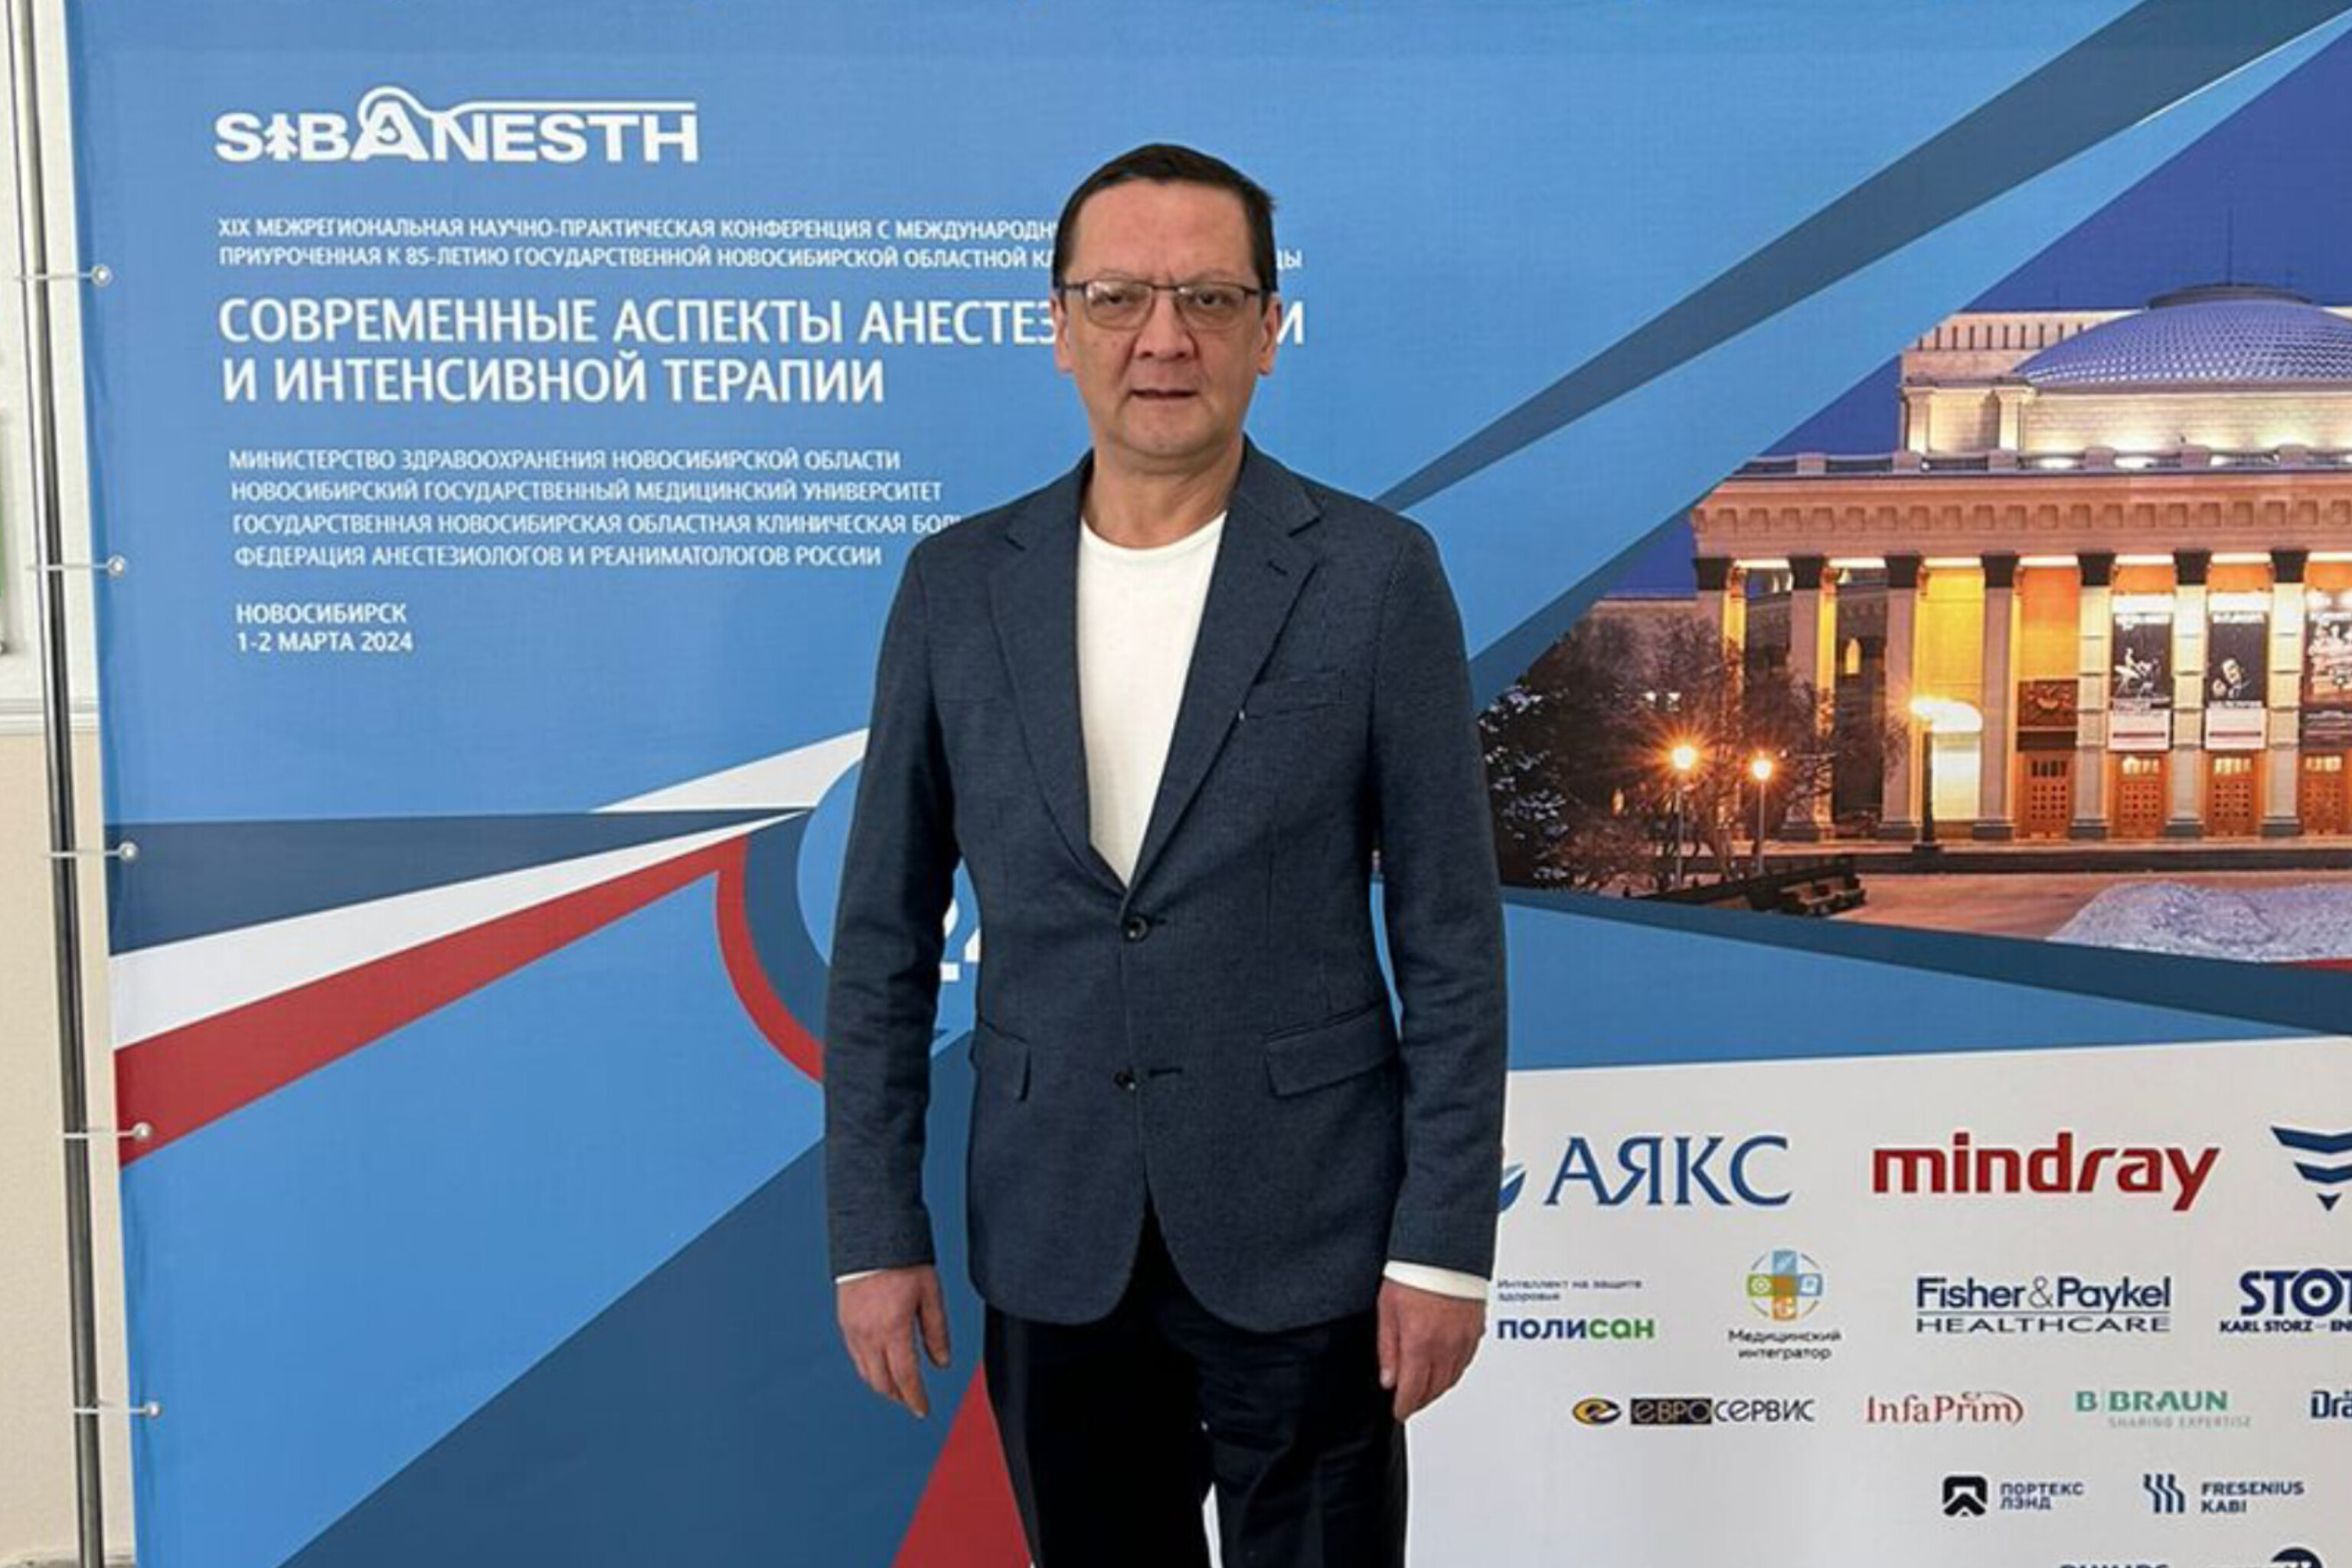 Заведующий отделением анестезиологии и реанимации выступил с докладом на XIX Межрегиональной НПК в Новосибирске